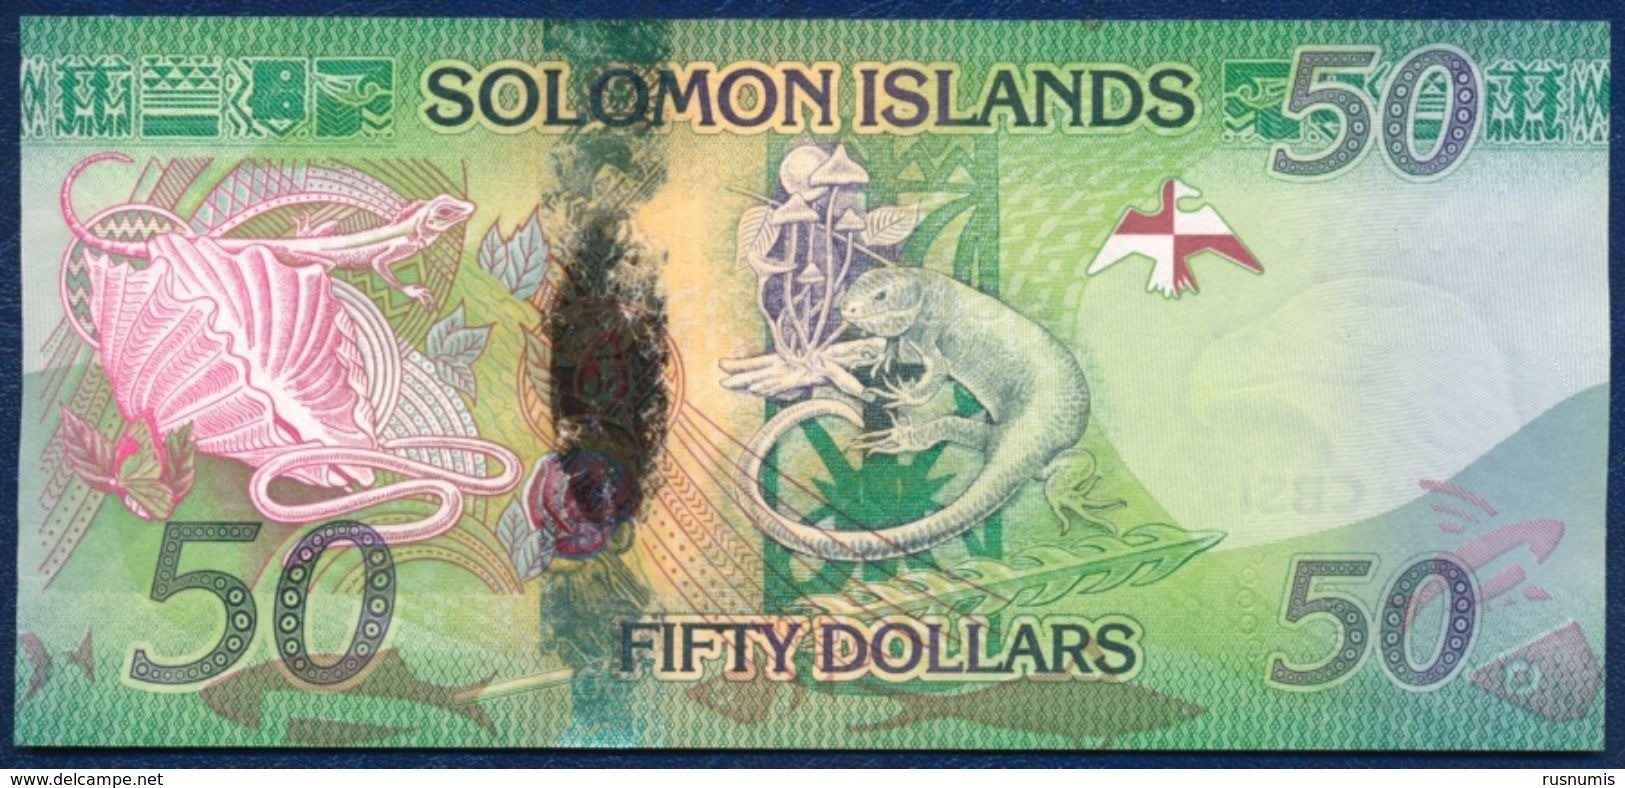 SOLOMON ISLANDS 50 DOLLARS P-35a LIZARD 2013 UNC - Solomonen